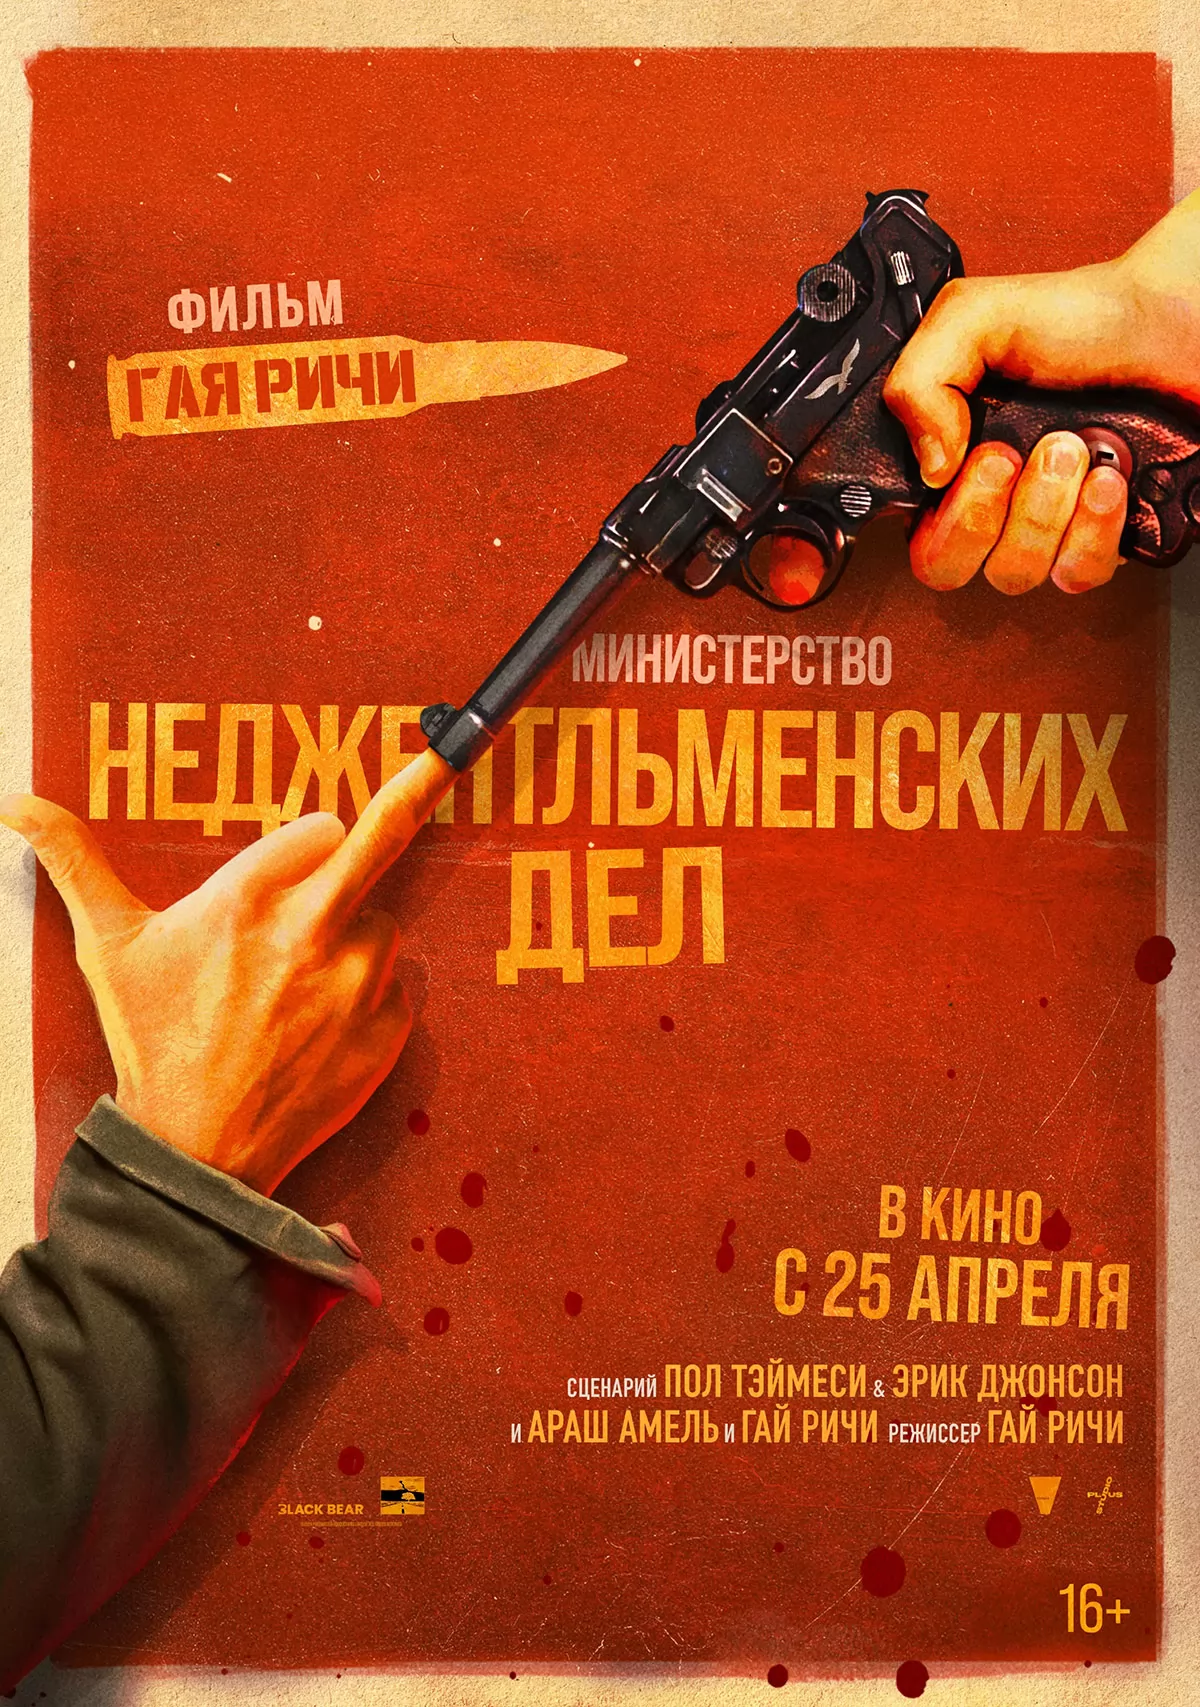 Министерство неджентльменских дел: постер N232213